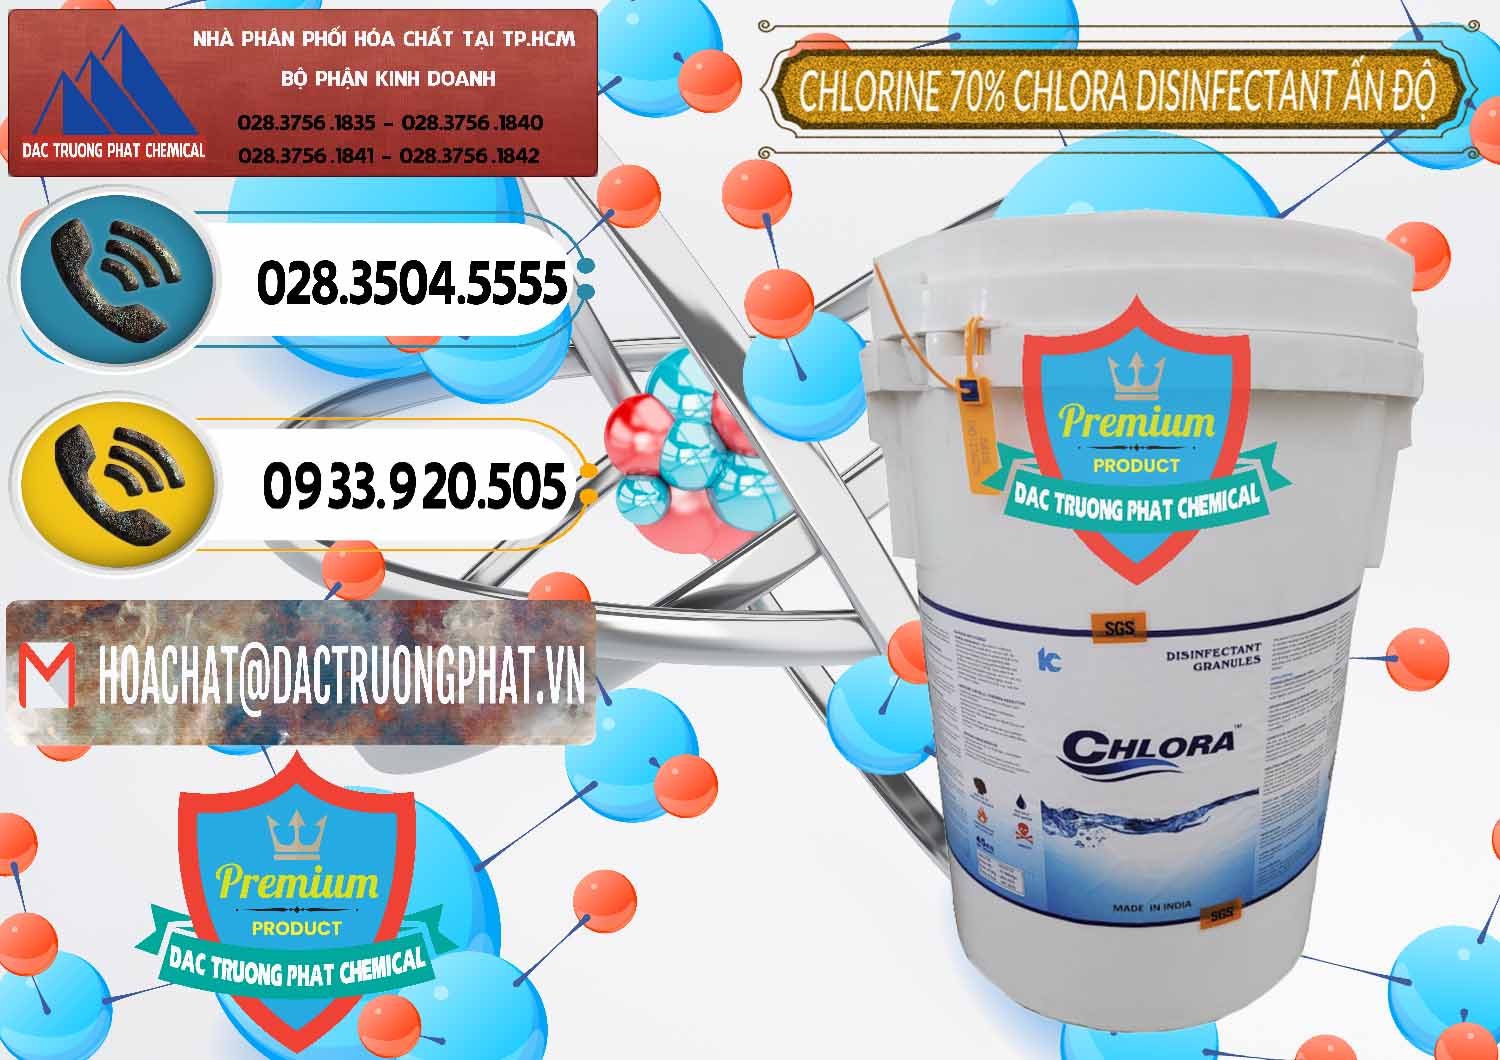 Công ty bán _ phân phối Chlorine – Clorin 70% Chlora Disinfectant Ấn Độ India - 0213 - Đơn vị chuyên phân phối ( bán ) hóa chất tại TP.HCM - hoachatdetnhuom.vn